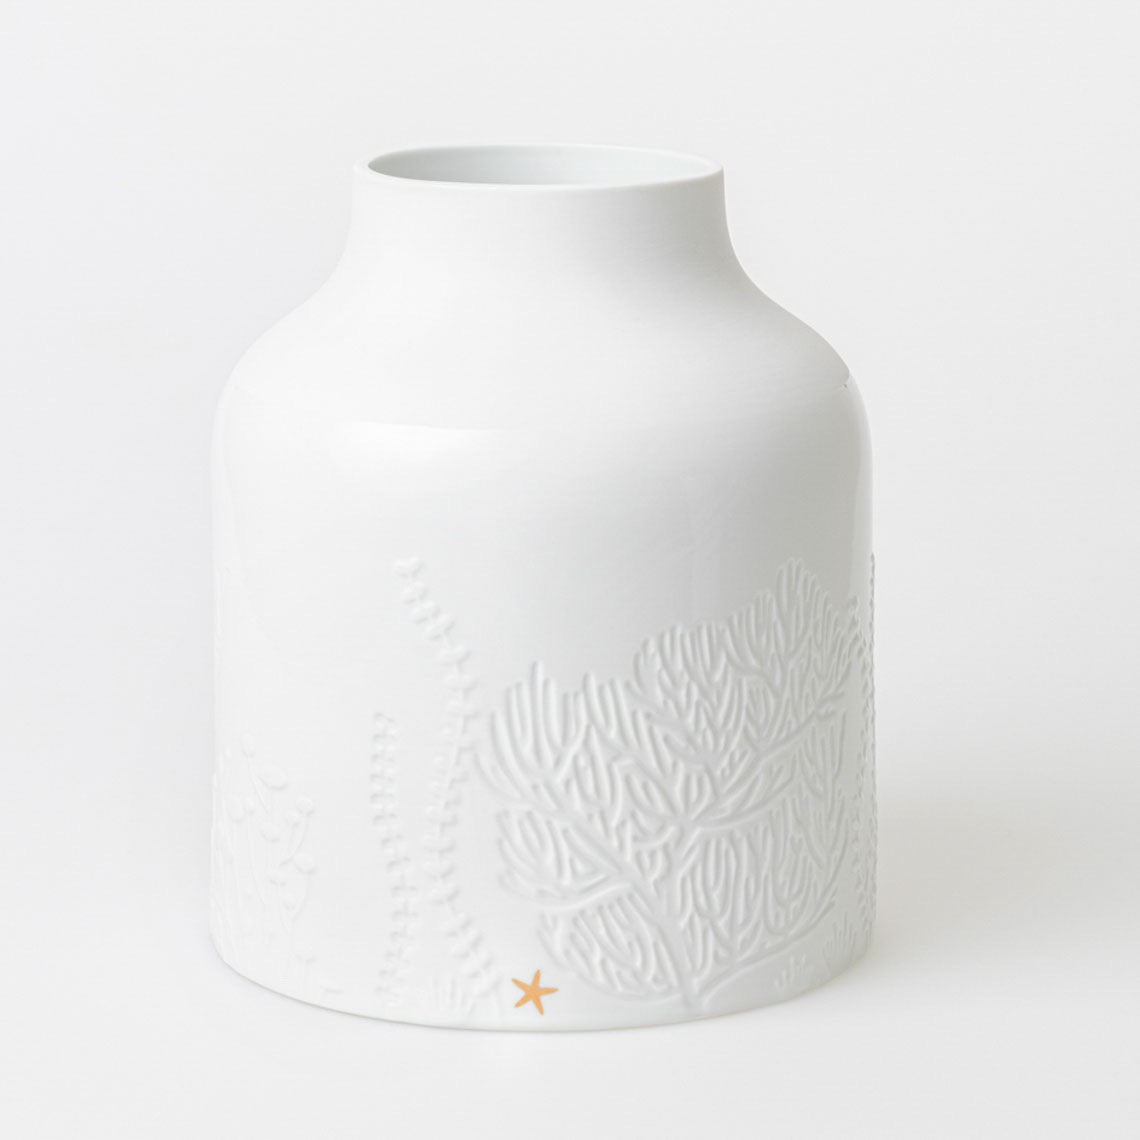 UNTERWASSERWELT Vase UNTERWASSERWELT von Räder-Design aus weißem und matten Porzellan mit goldenem Decal